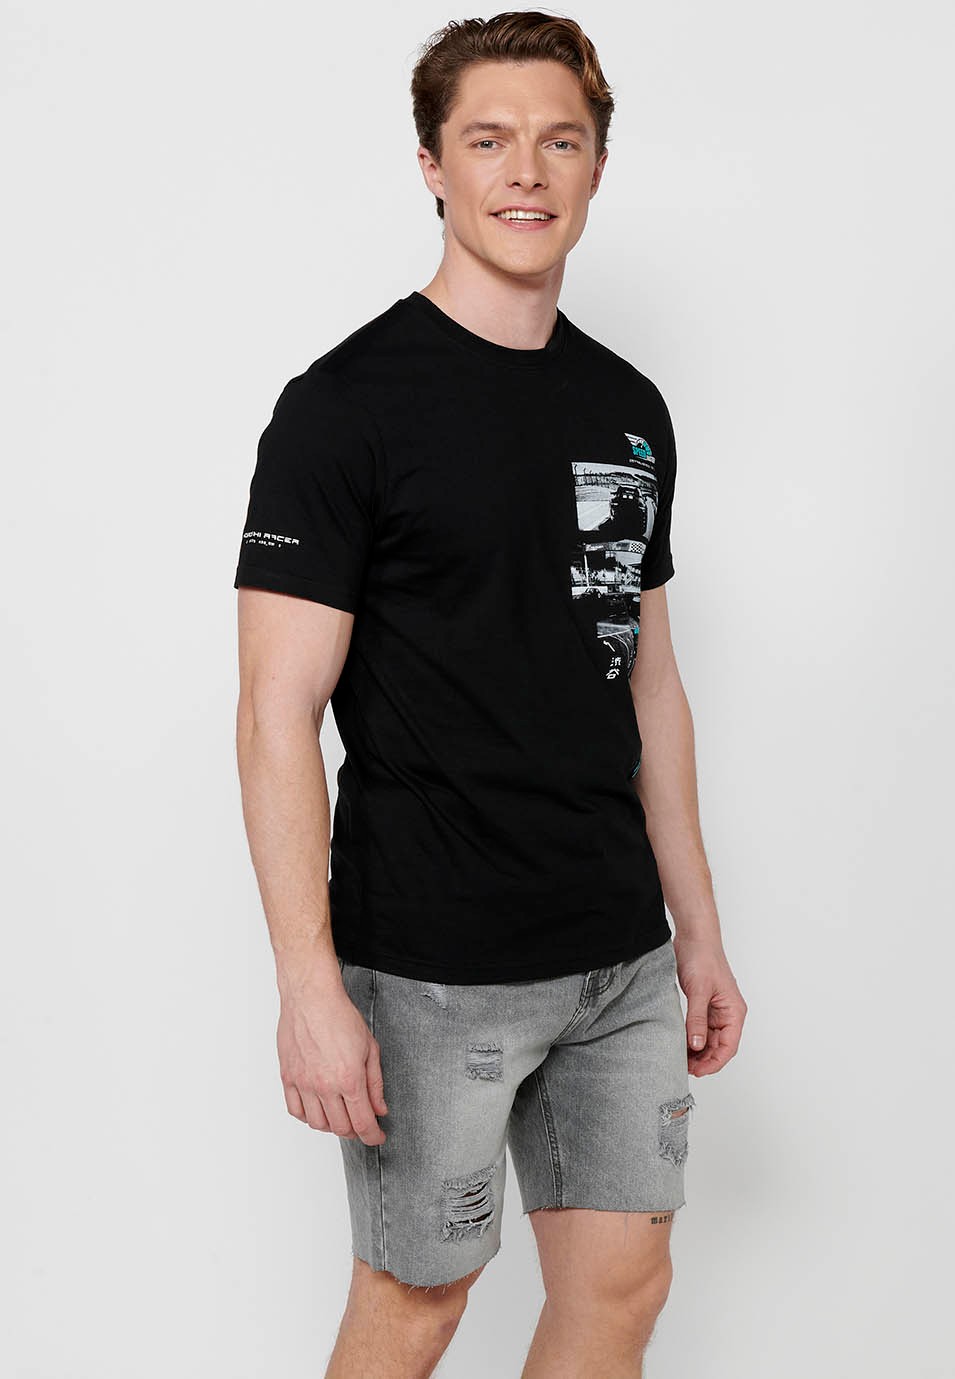 T-shirt manches courtes en coton, imprimé poitrine multicolore, coloris noir pour homme